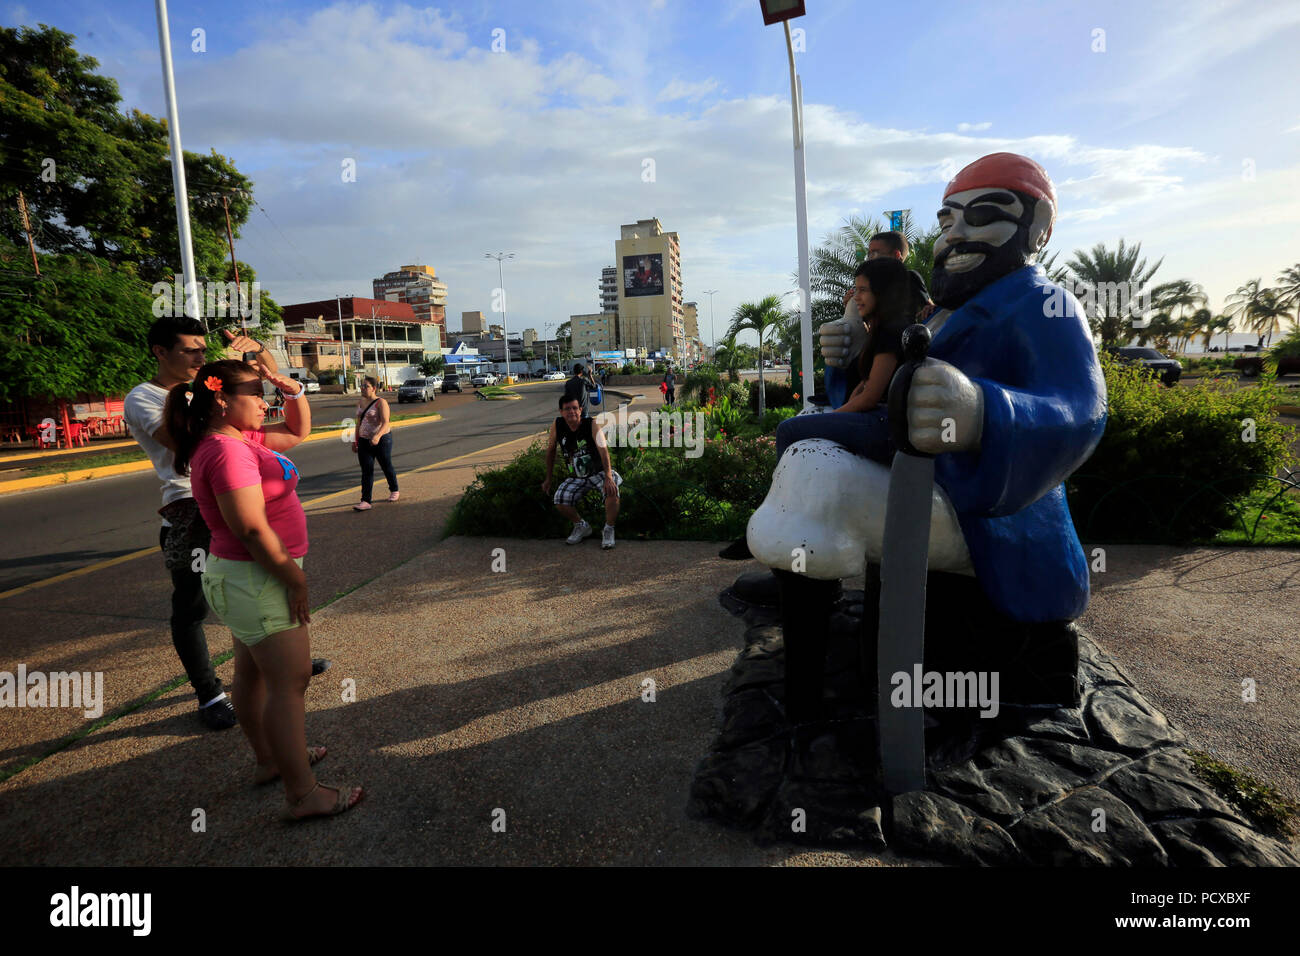 3 août 2018 - Puerto La Cruz, Venezuela, Anzoategui - Août 03, 2018. Le pirate, est une statue qui est situé dans l'une des extrémités de la croix à pied de la mer, ancien Paseo Colon. La même a été faite par le sculpteur Pedro Campos, et placé en 1985, qui après avoir reçu plusieurs, cette opération s'est passé au fil des ans pour devenir une icône de la ville, et près d'arrêt obligatoire pour les touristes et les visiteurs de se faire photographier. Dans la ville de Puerto la Cruz, état Anzoategui. Le Venezuela. Photo : Juan Carlos Hernandez (crédit Image : © Juan Carlos Hernandez via Zuma sur le fil) Banque D'Images